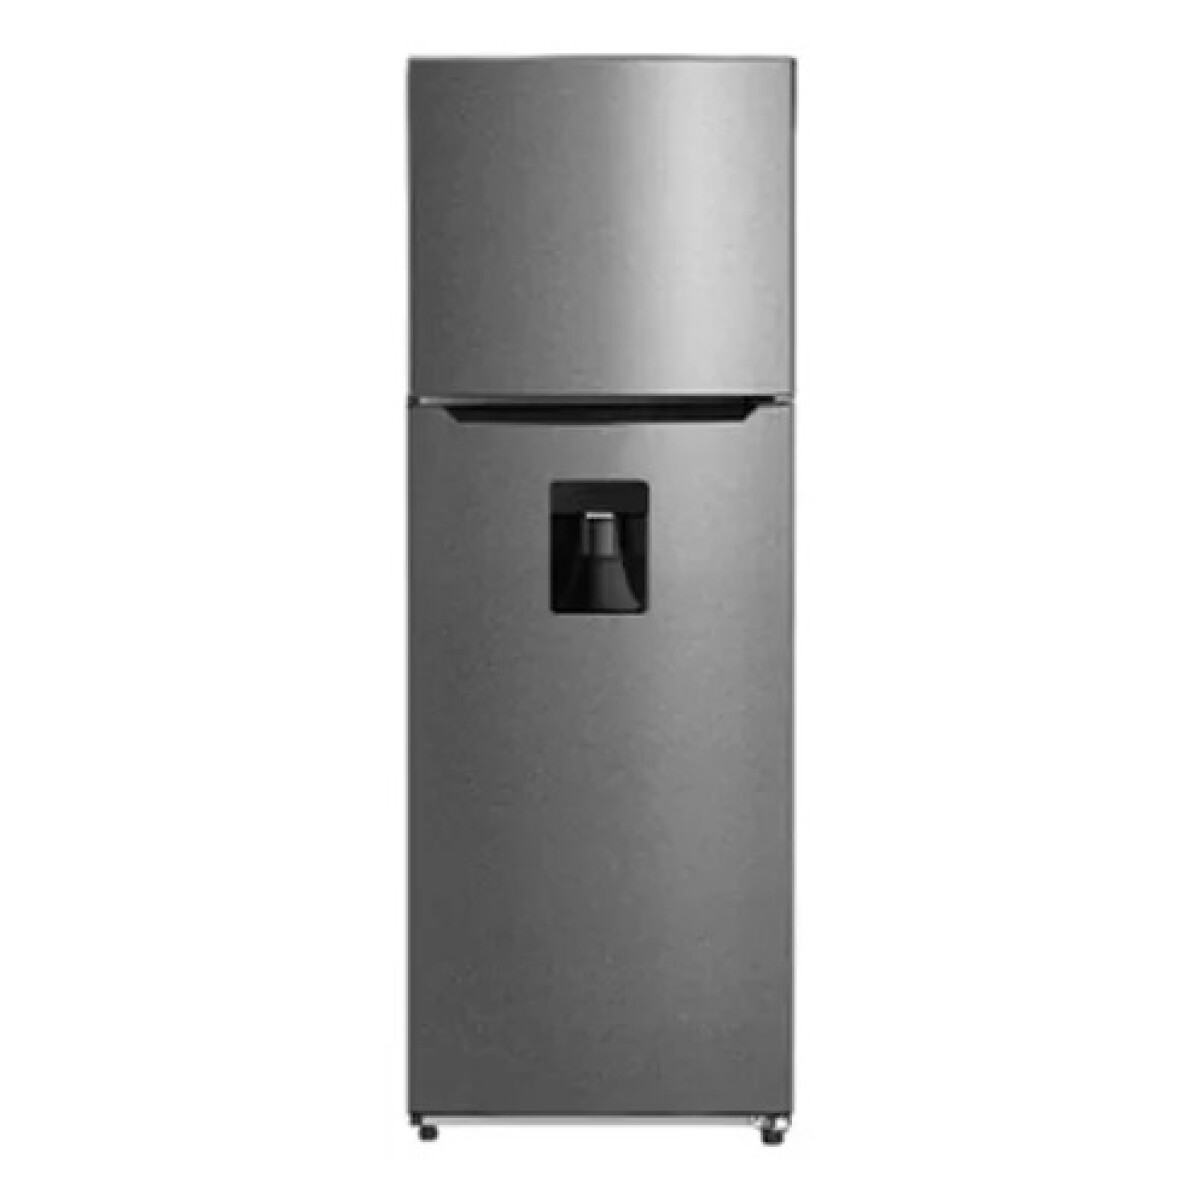 Refrigerador Midea 274 Inox Mdrt385mt46w M300cd 